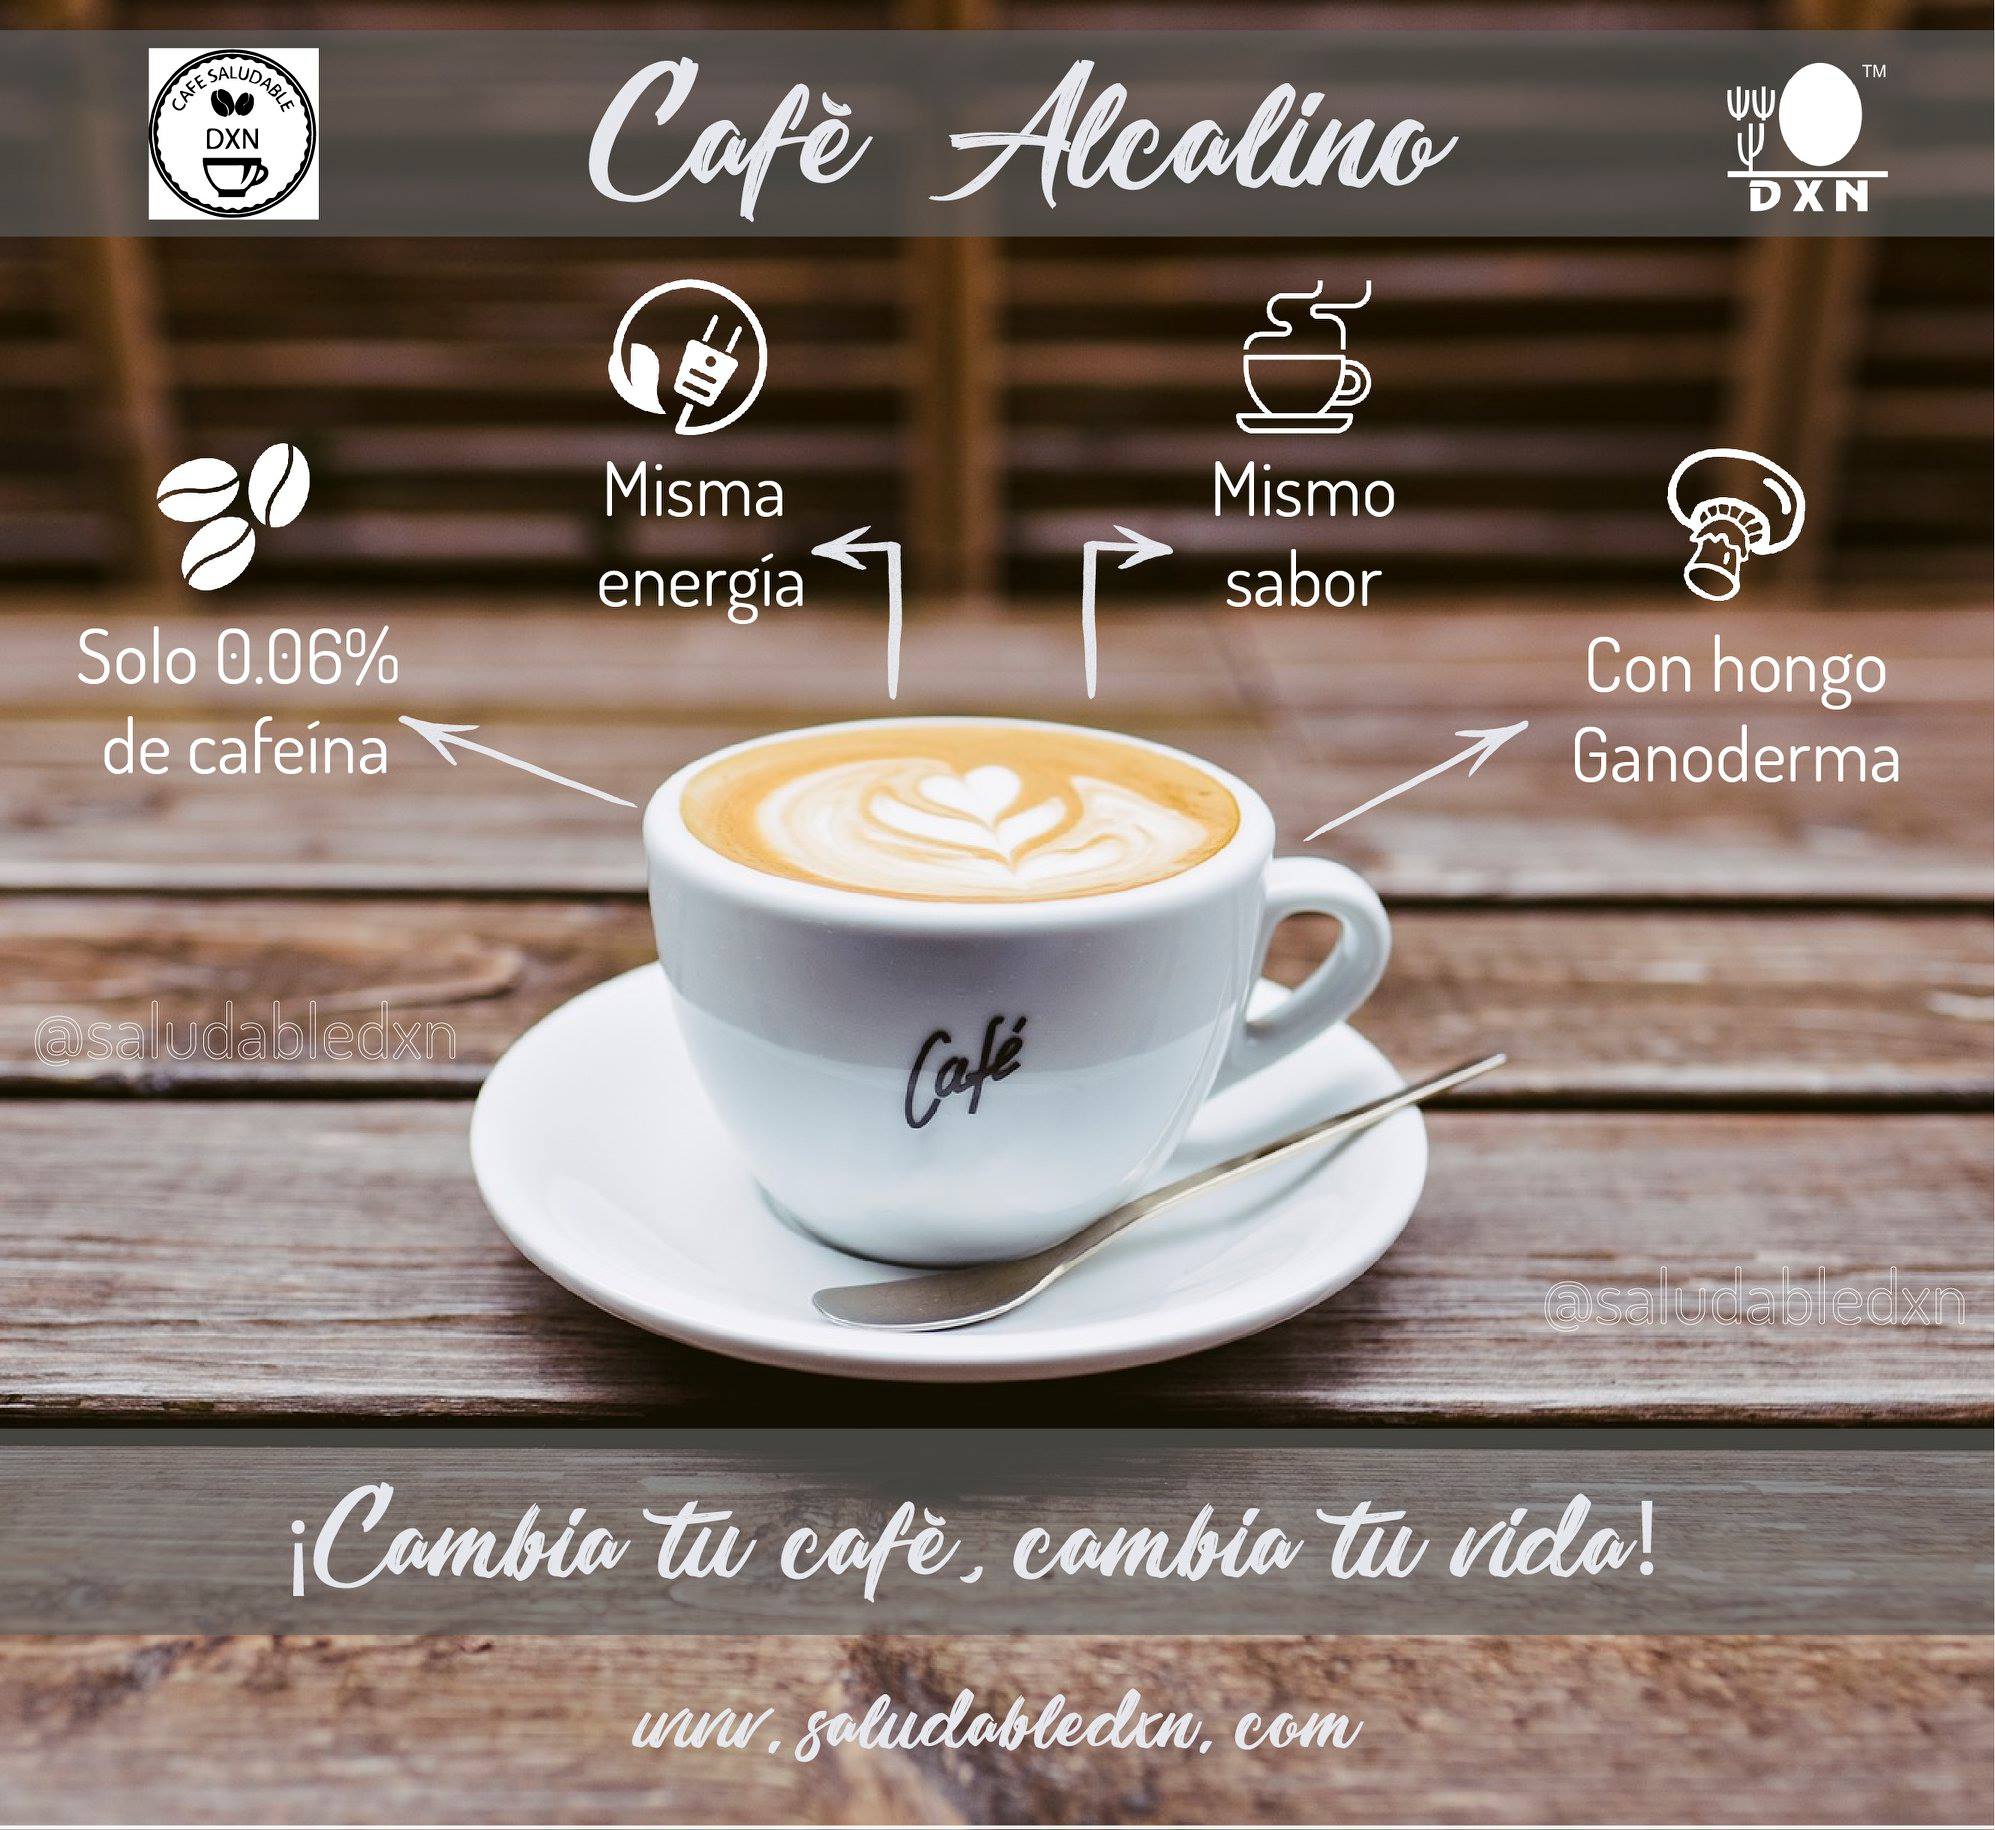 cafe alcalino